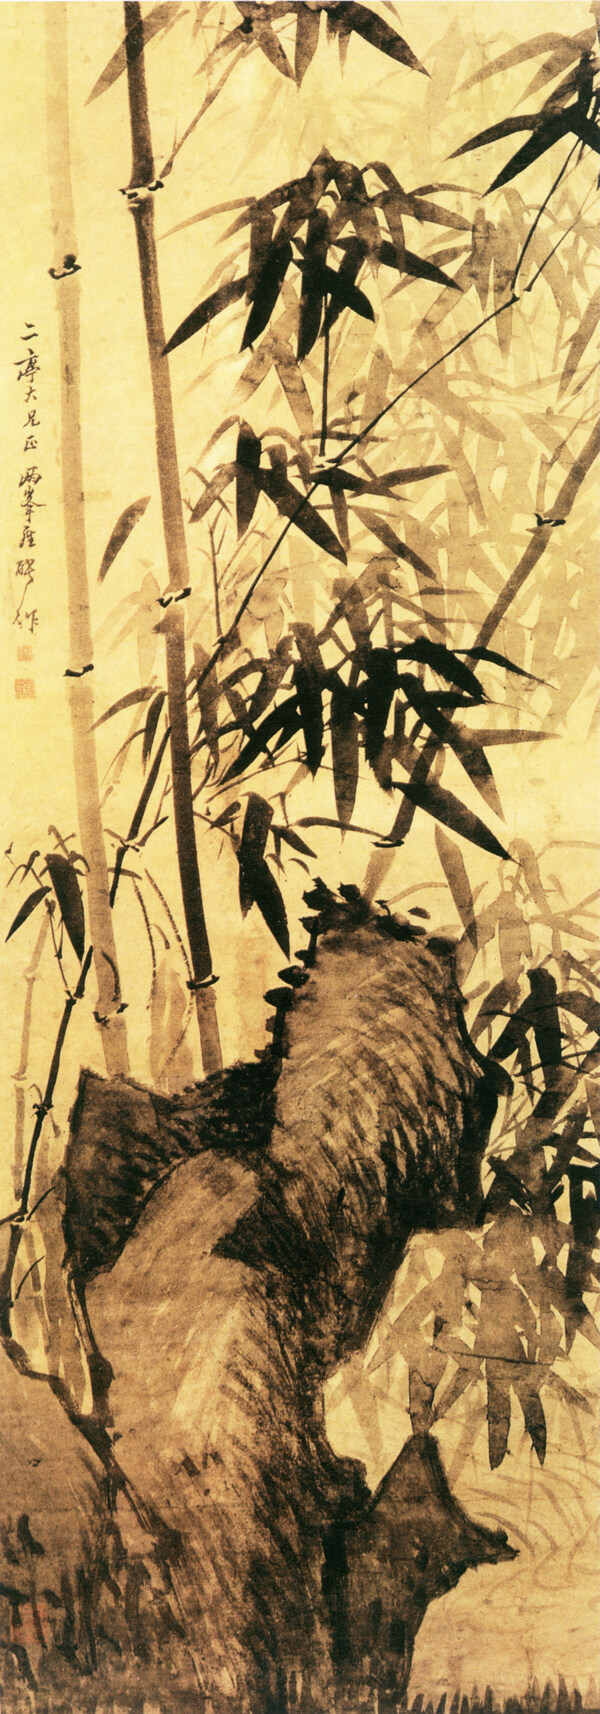 手绘竹子素材图片